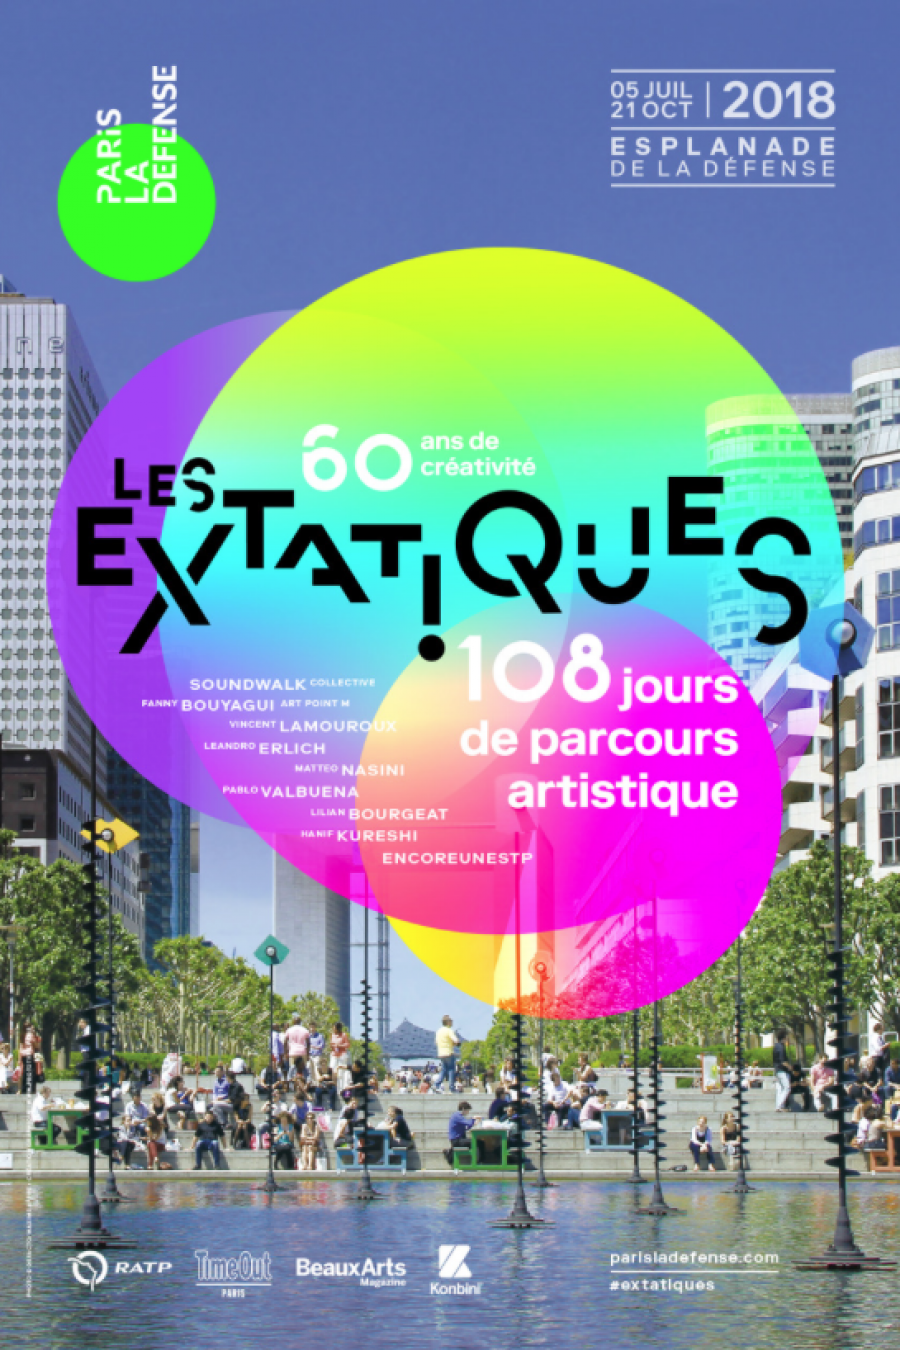 Les Extatiques - Paris La Défense, 2018 © Prototype